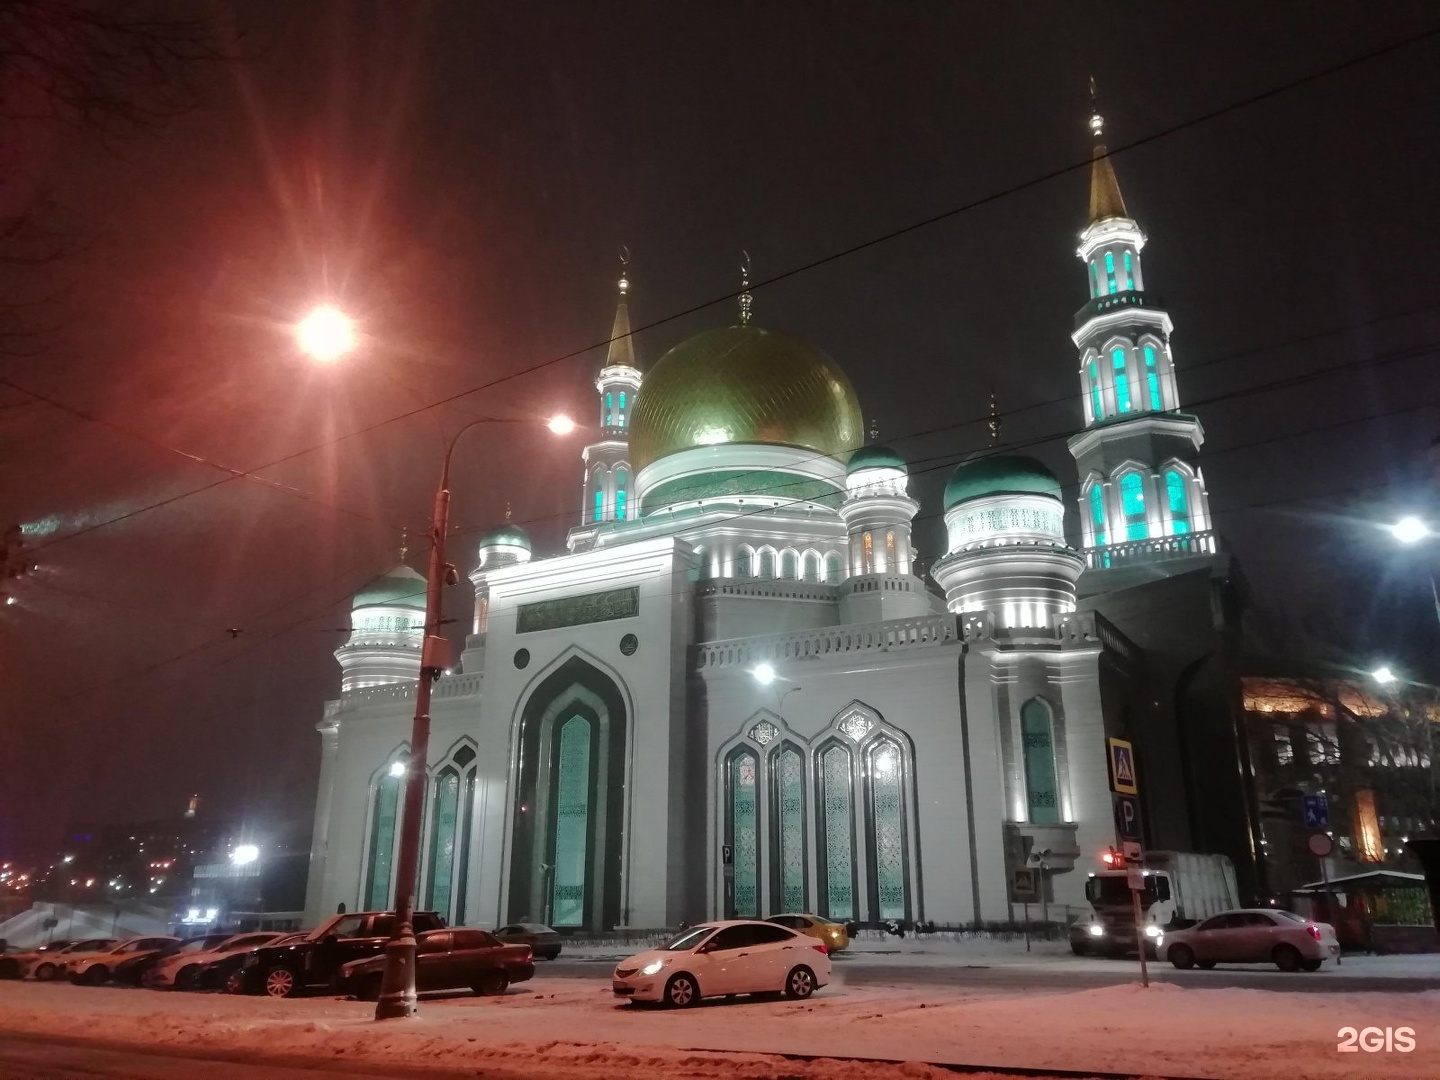 Мечети в москве фото с названиями